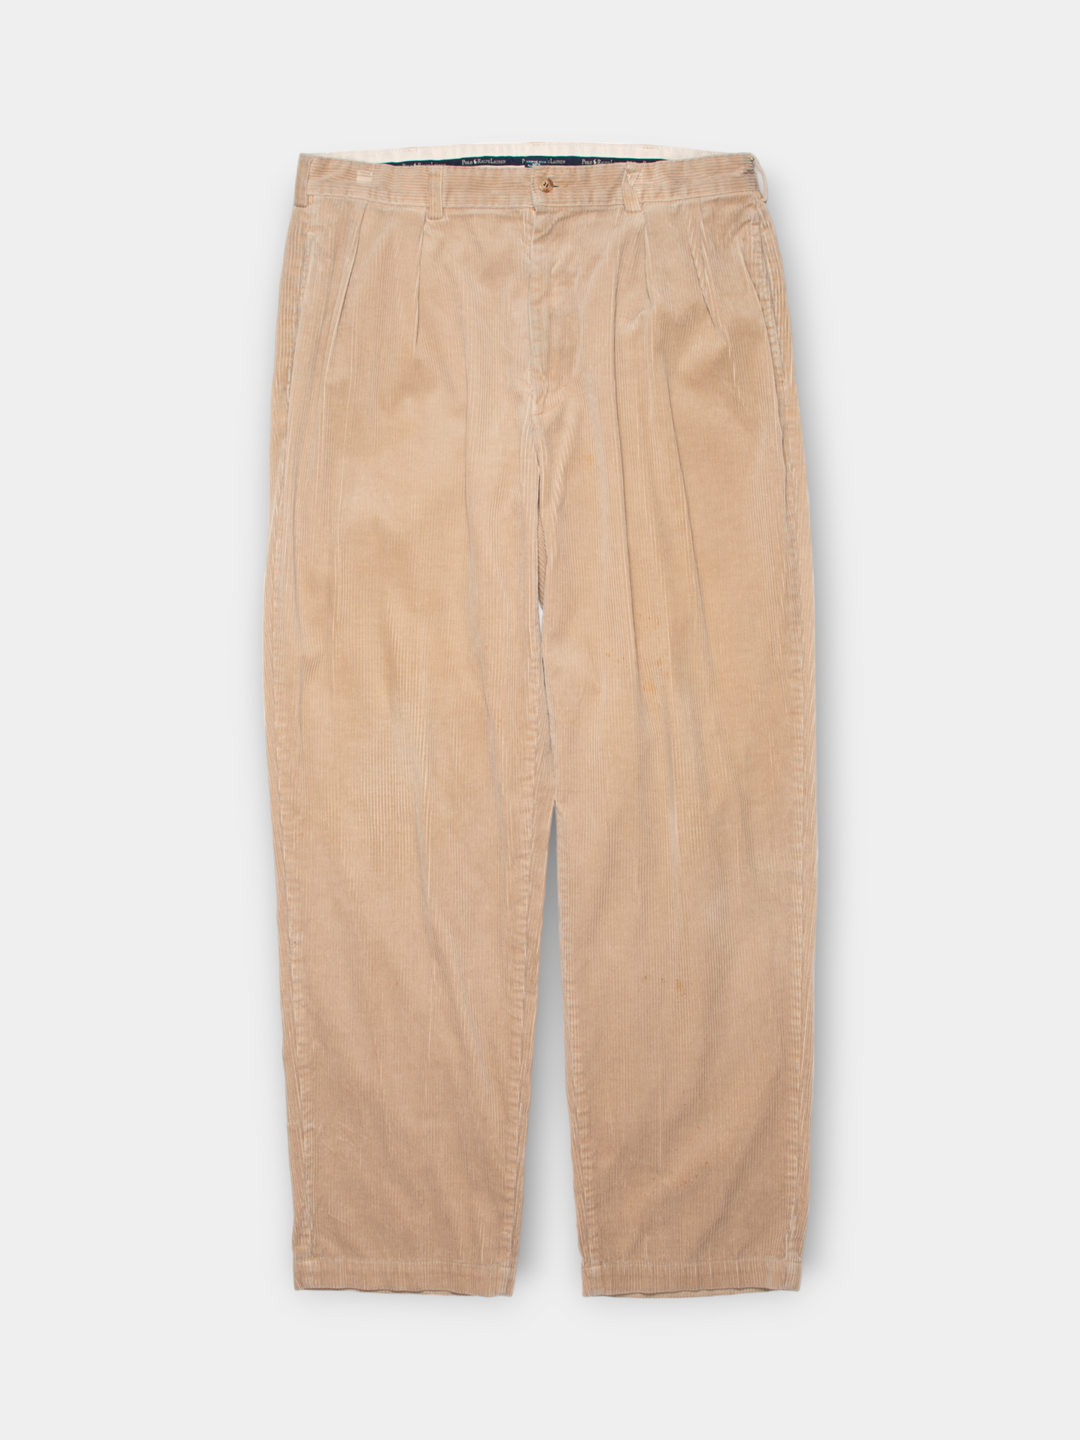 90s Ralph Lauren Corduroy Pants (36")